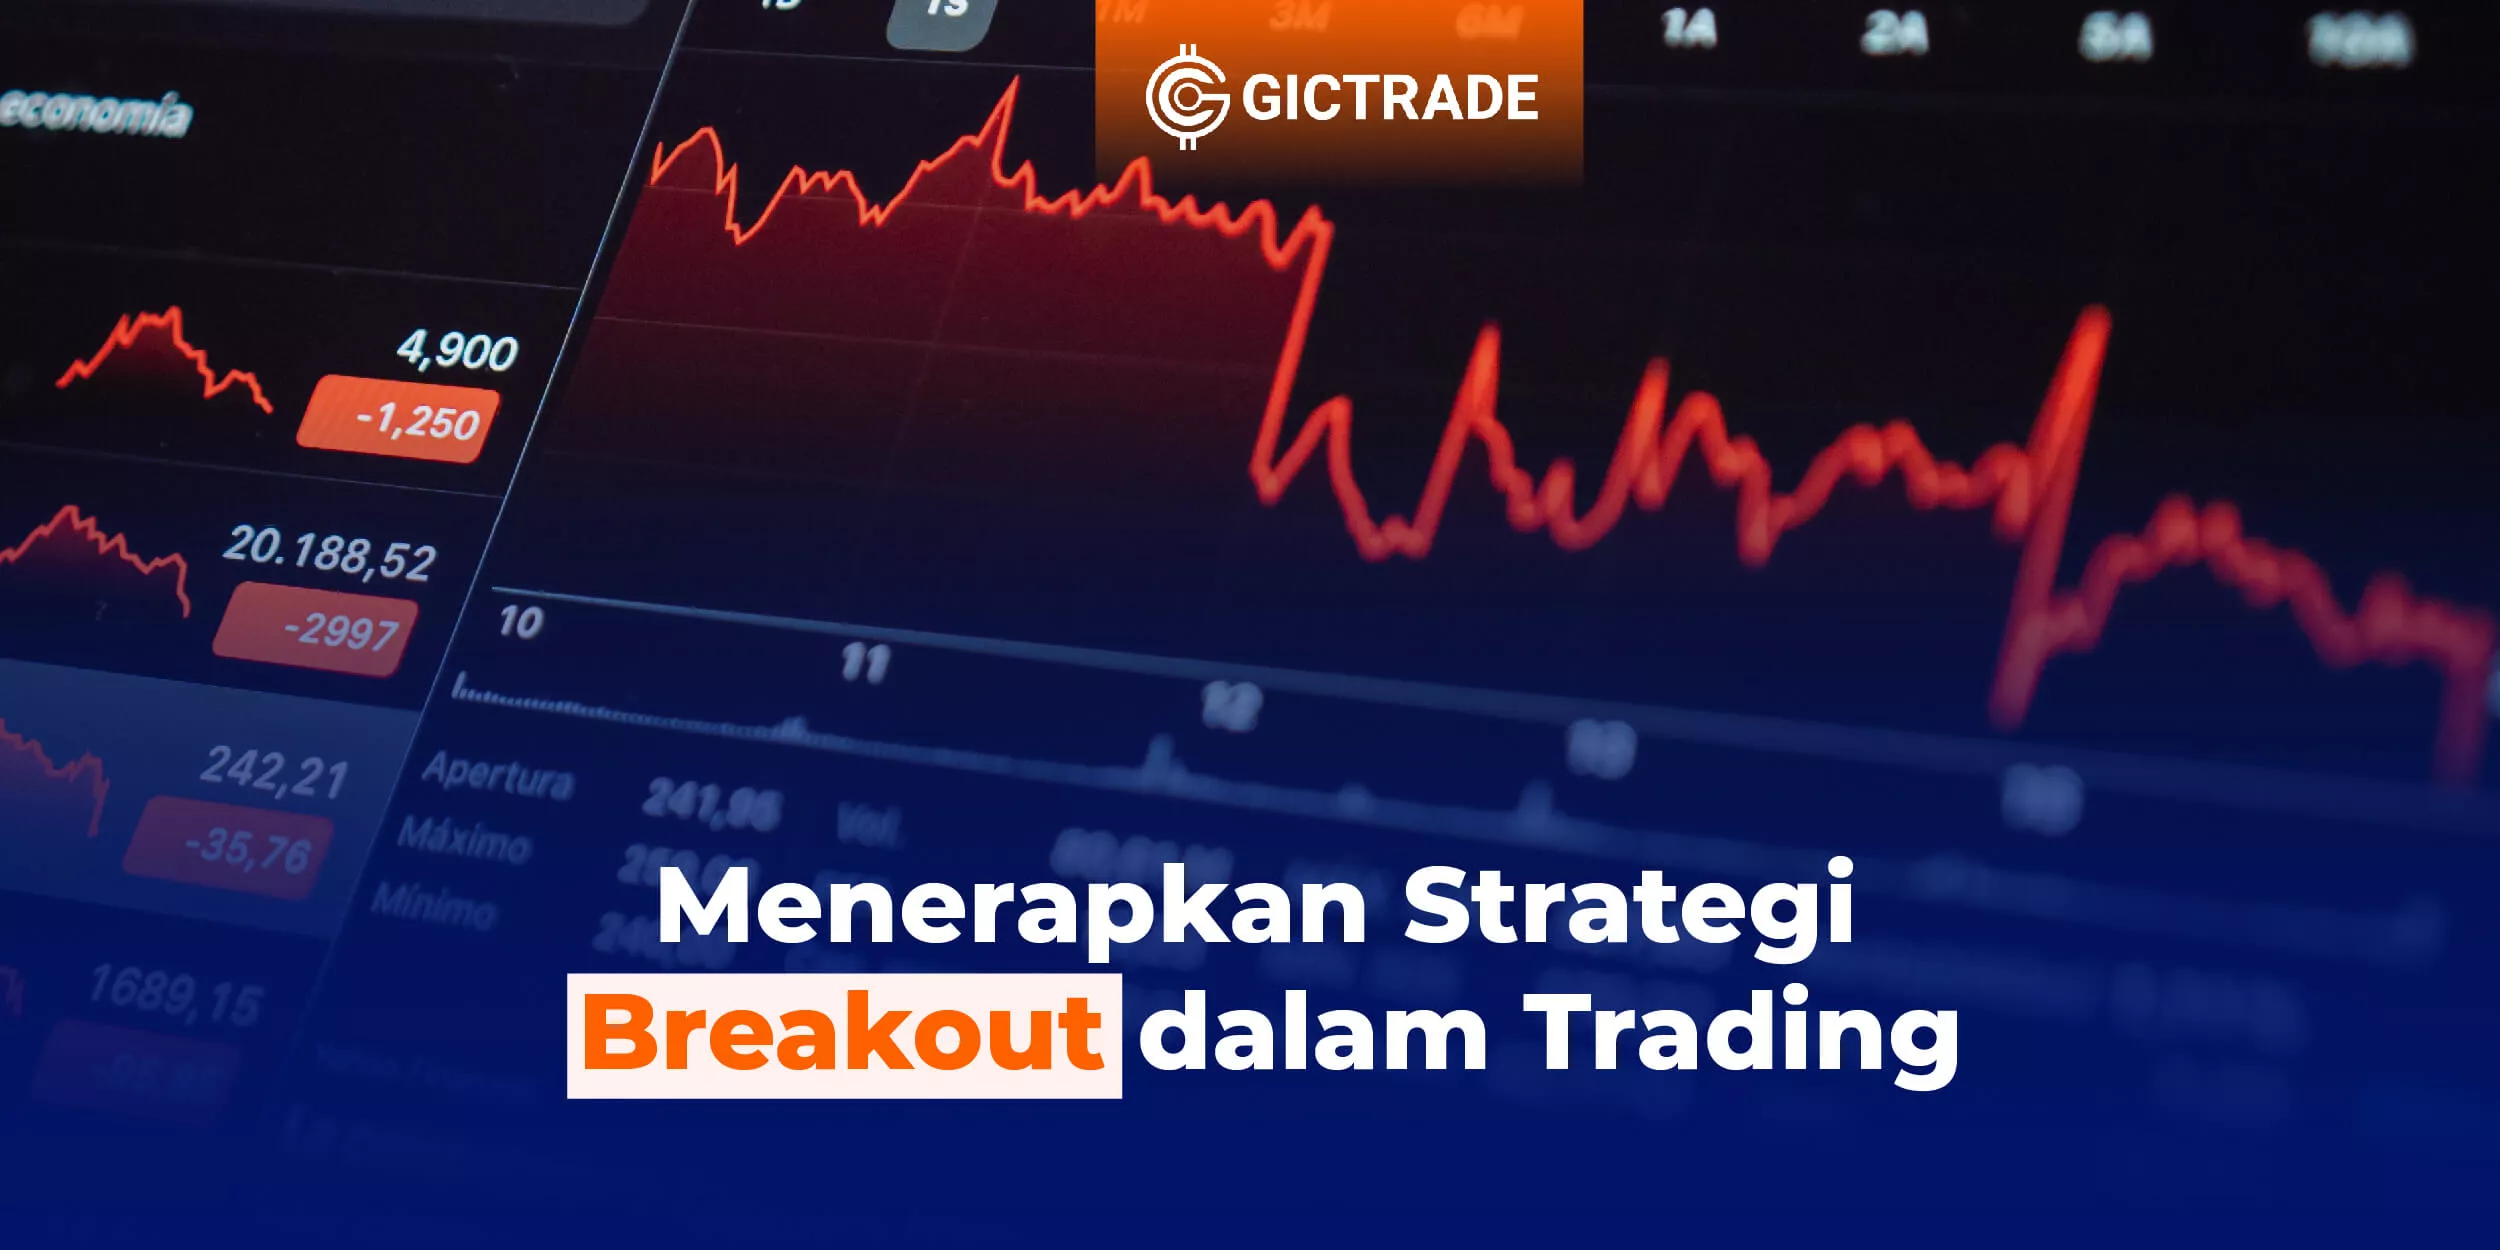 Menerapkan Strategi Breakout dalam Trading